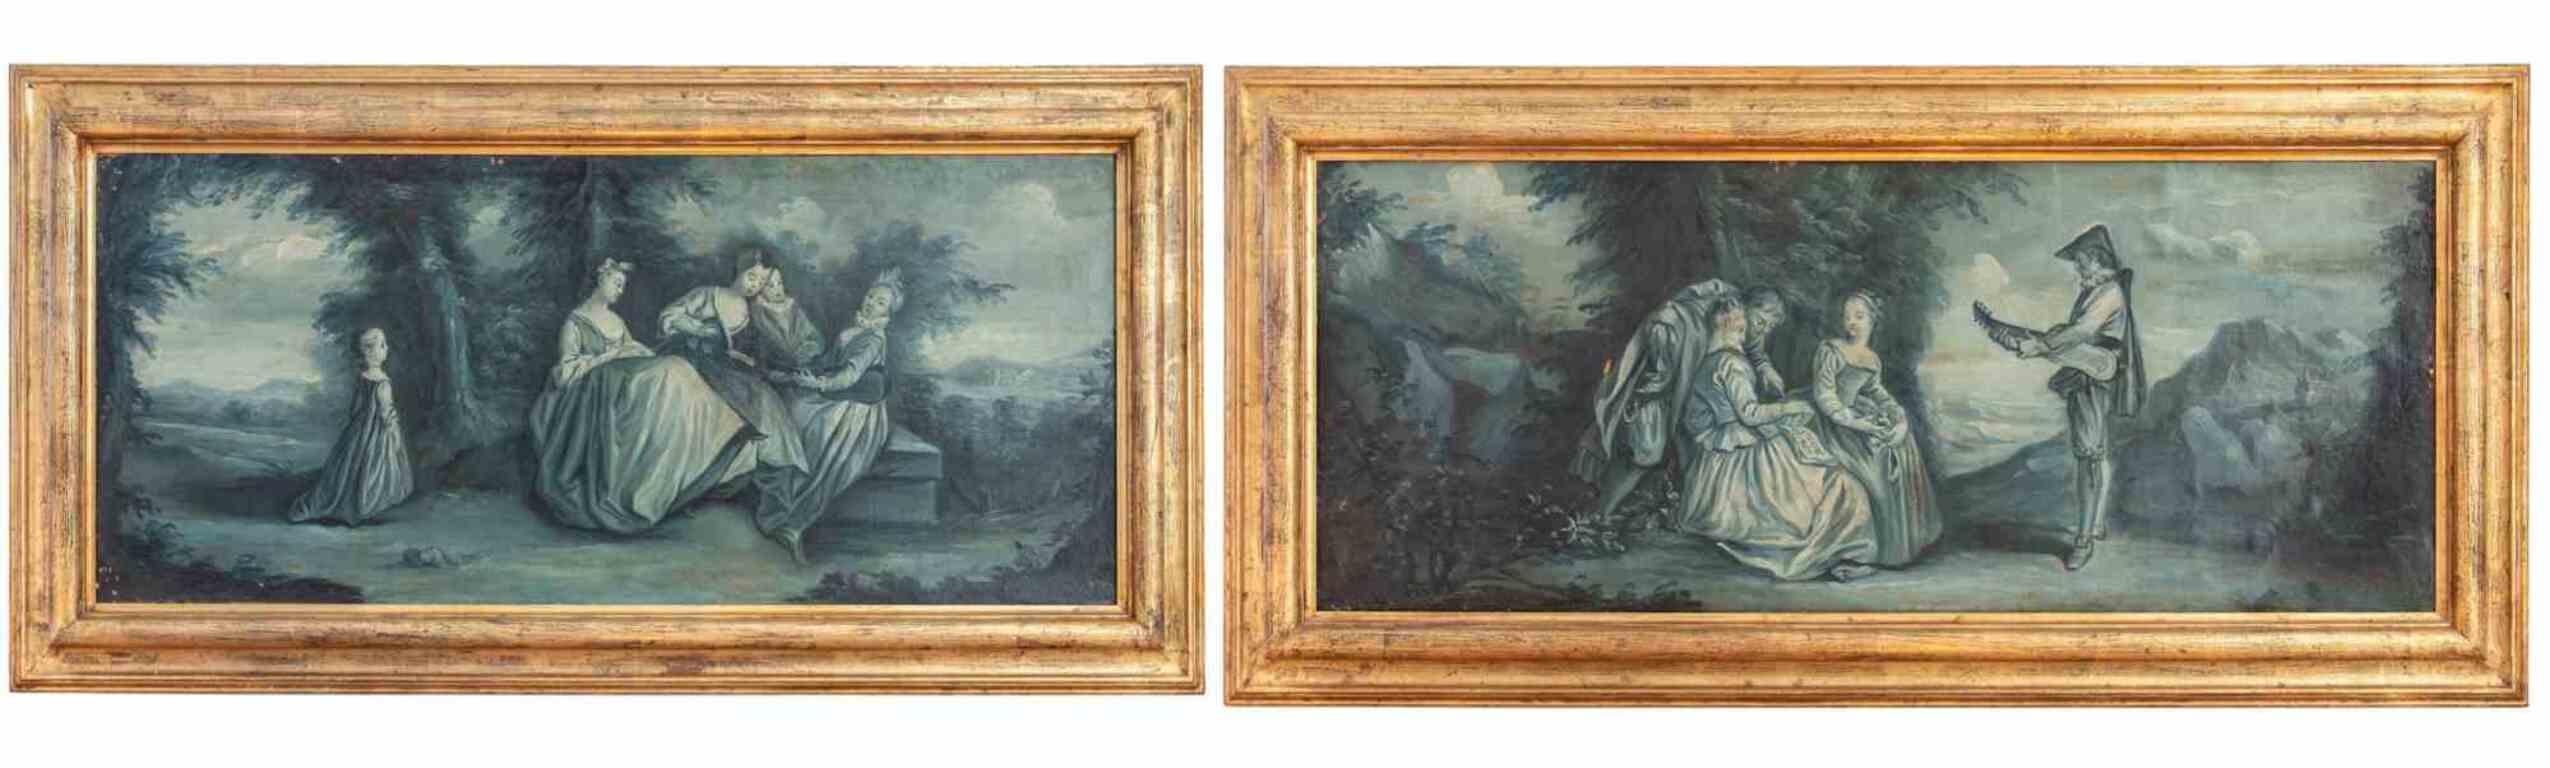 Ein Paar Gallant-Szenen – Öl auf Leinwand – 18. Jahrhundert